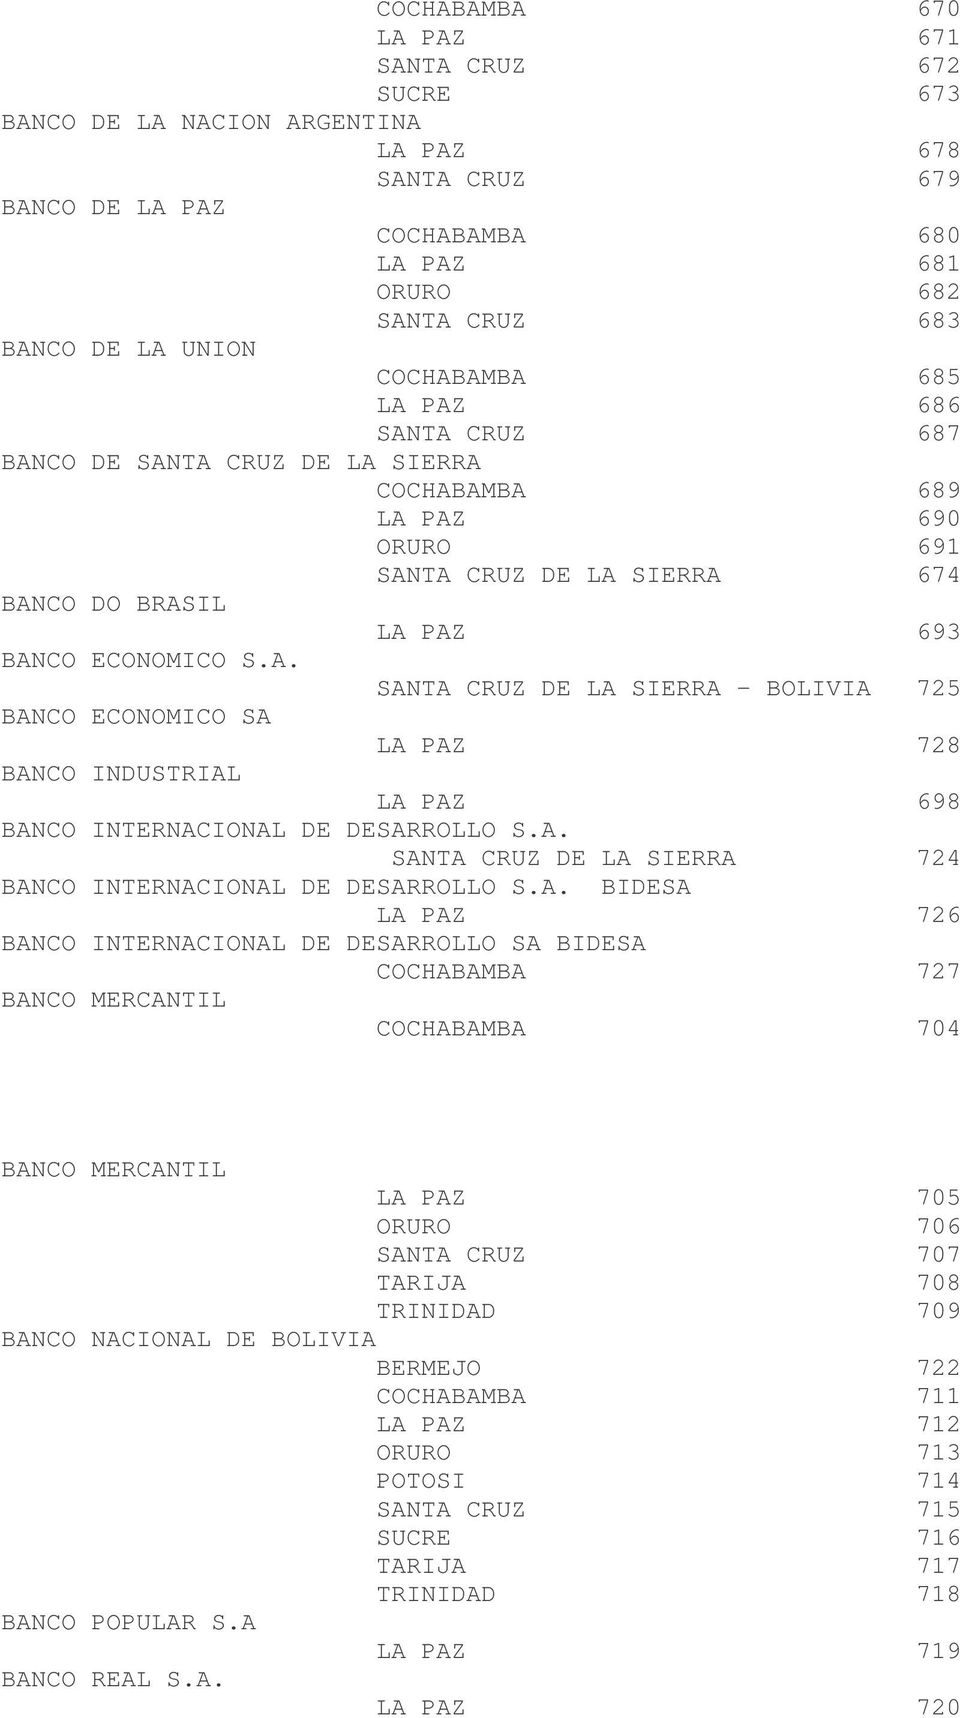 A. SANTA CRUZ DE LA SIERRA 724 BANCO INTERNACIONAL DE DESARROLLO S.A. BIDESA LA PAZ 726 BANCO INTERNACIONAL DE DESARROLLO SA BIDESA COCHABAMBA 727 BANCO MERCANTIL COCHABAMBA 704 BANCO MERCANTIL LA